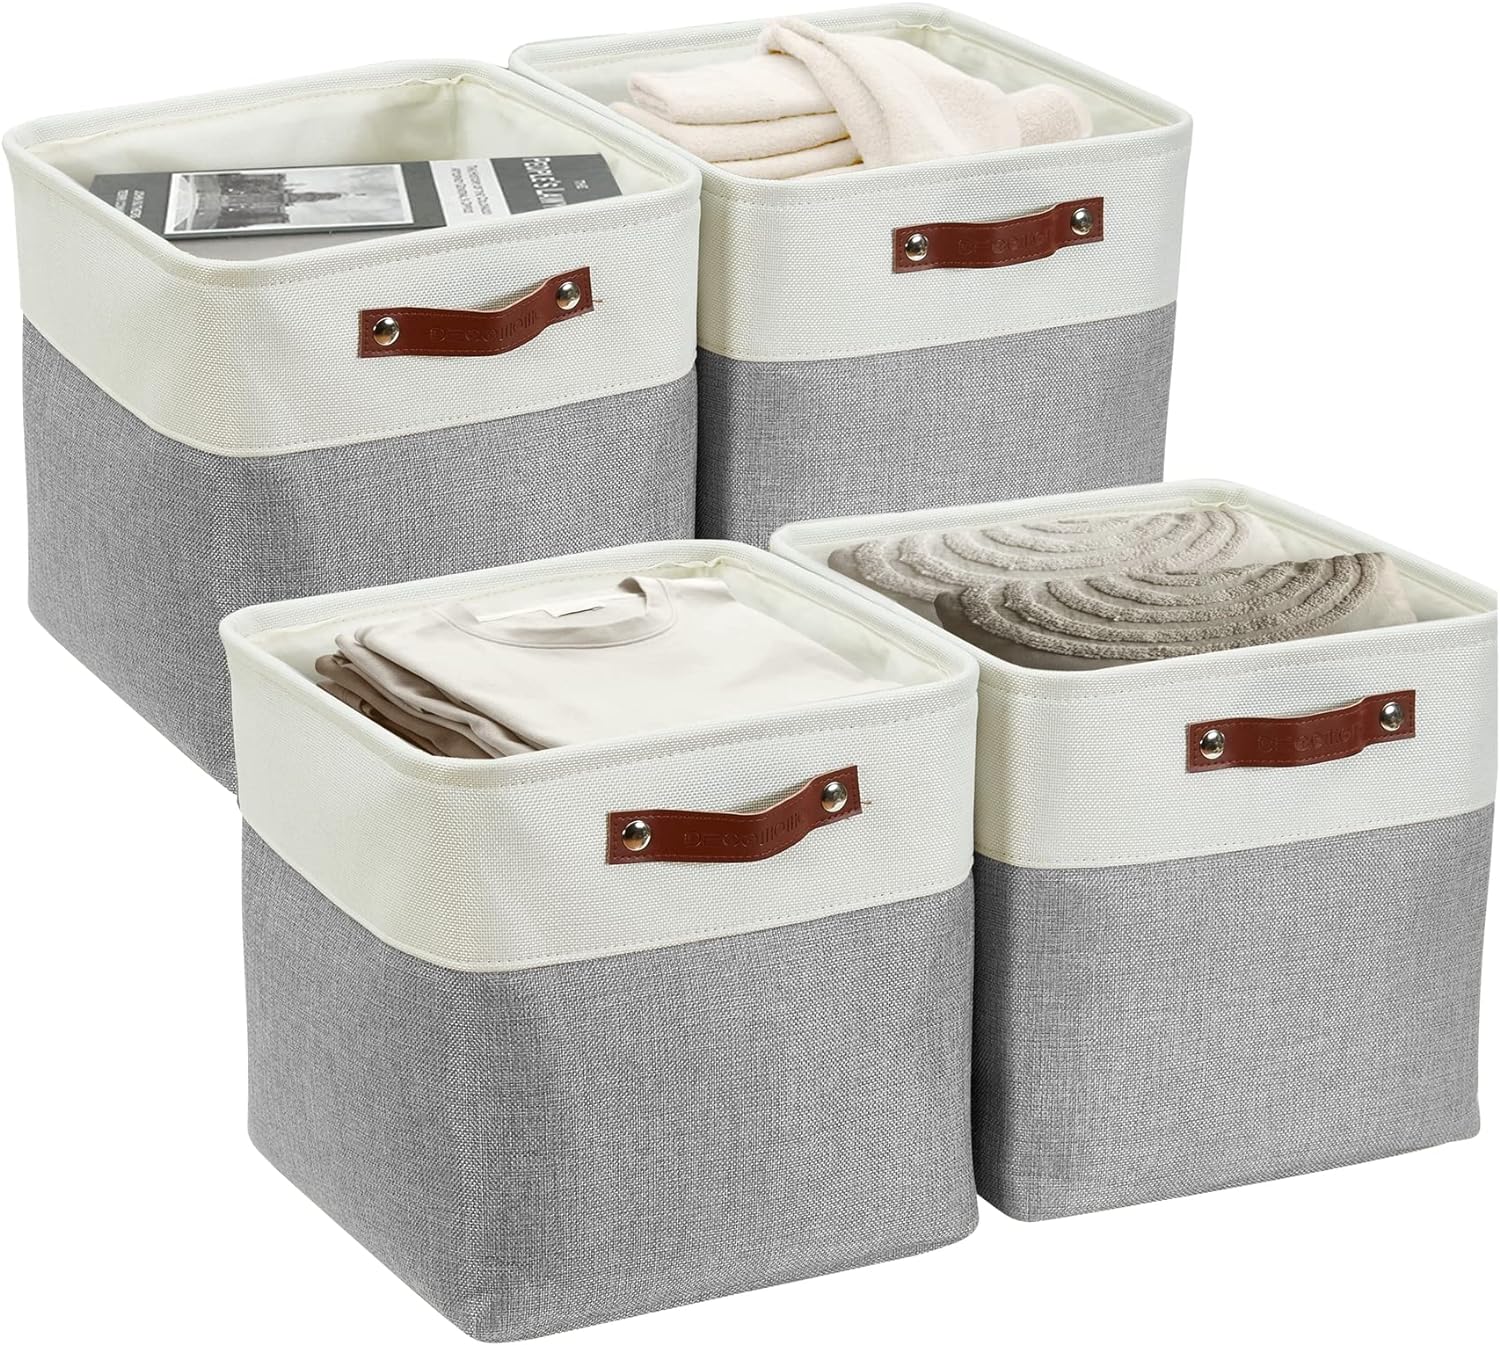 DECOMOMO Cube Storage Organizer Bins 11 inch Cube Storage Bin 4 Pack Cubby Storage Bins Storage Baskets for Organizing Shelf Closet Nursery Toys Cloth Bathroom (Grey&White)